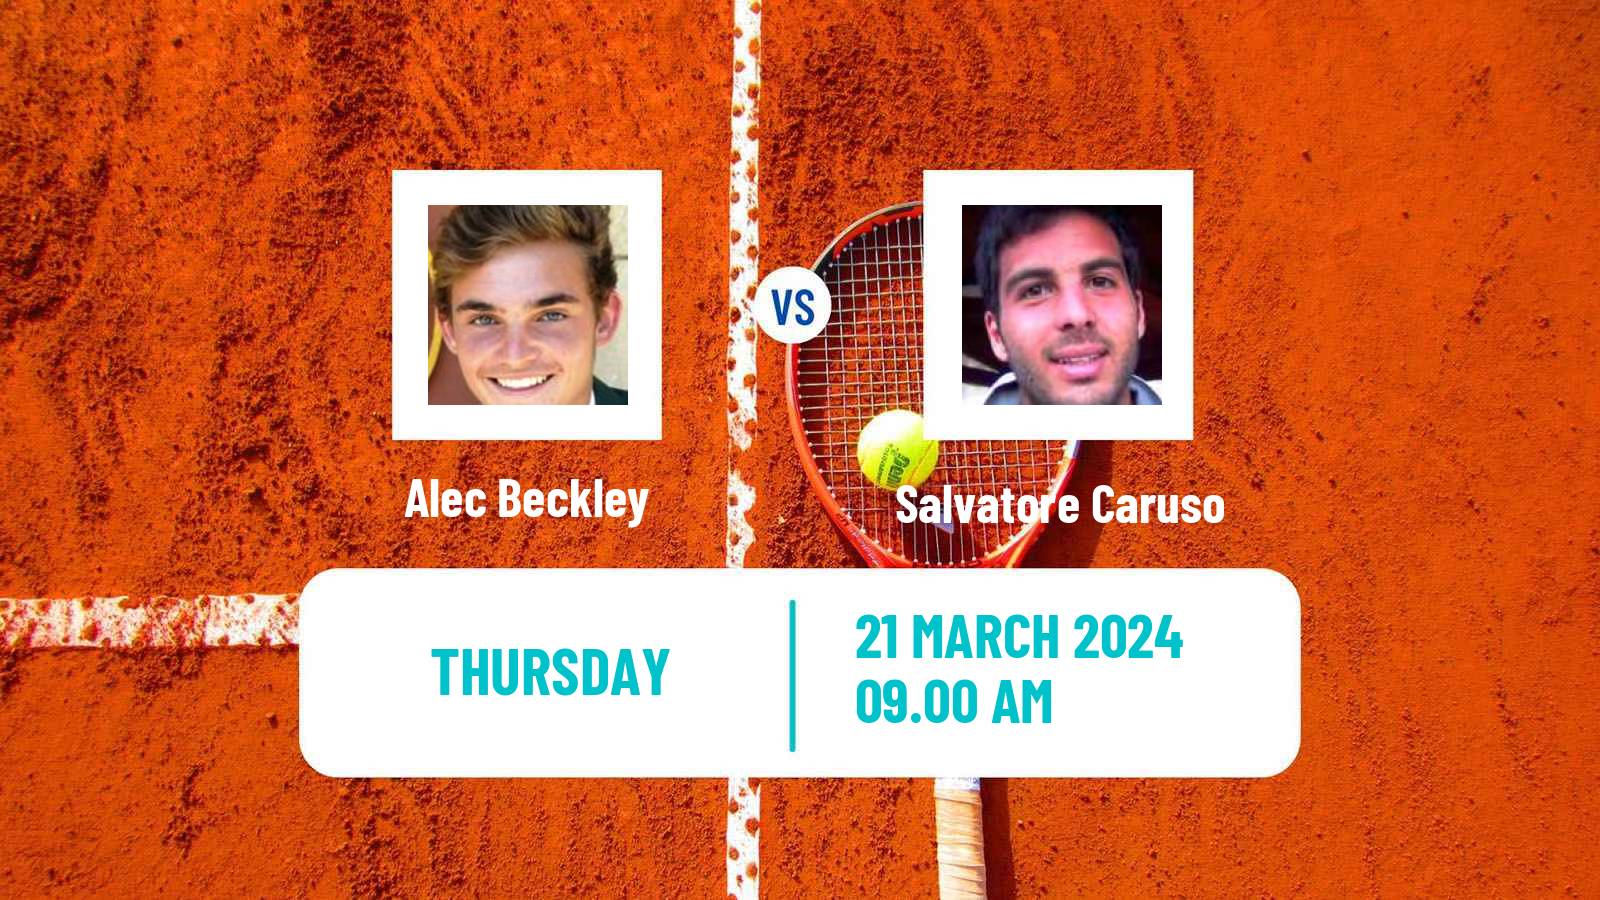 Tennis ITF M25 Loule Men Alec Beckley - Salvatore Caruso